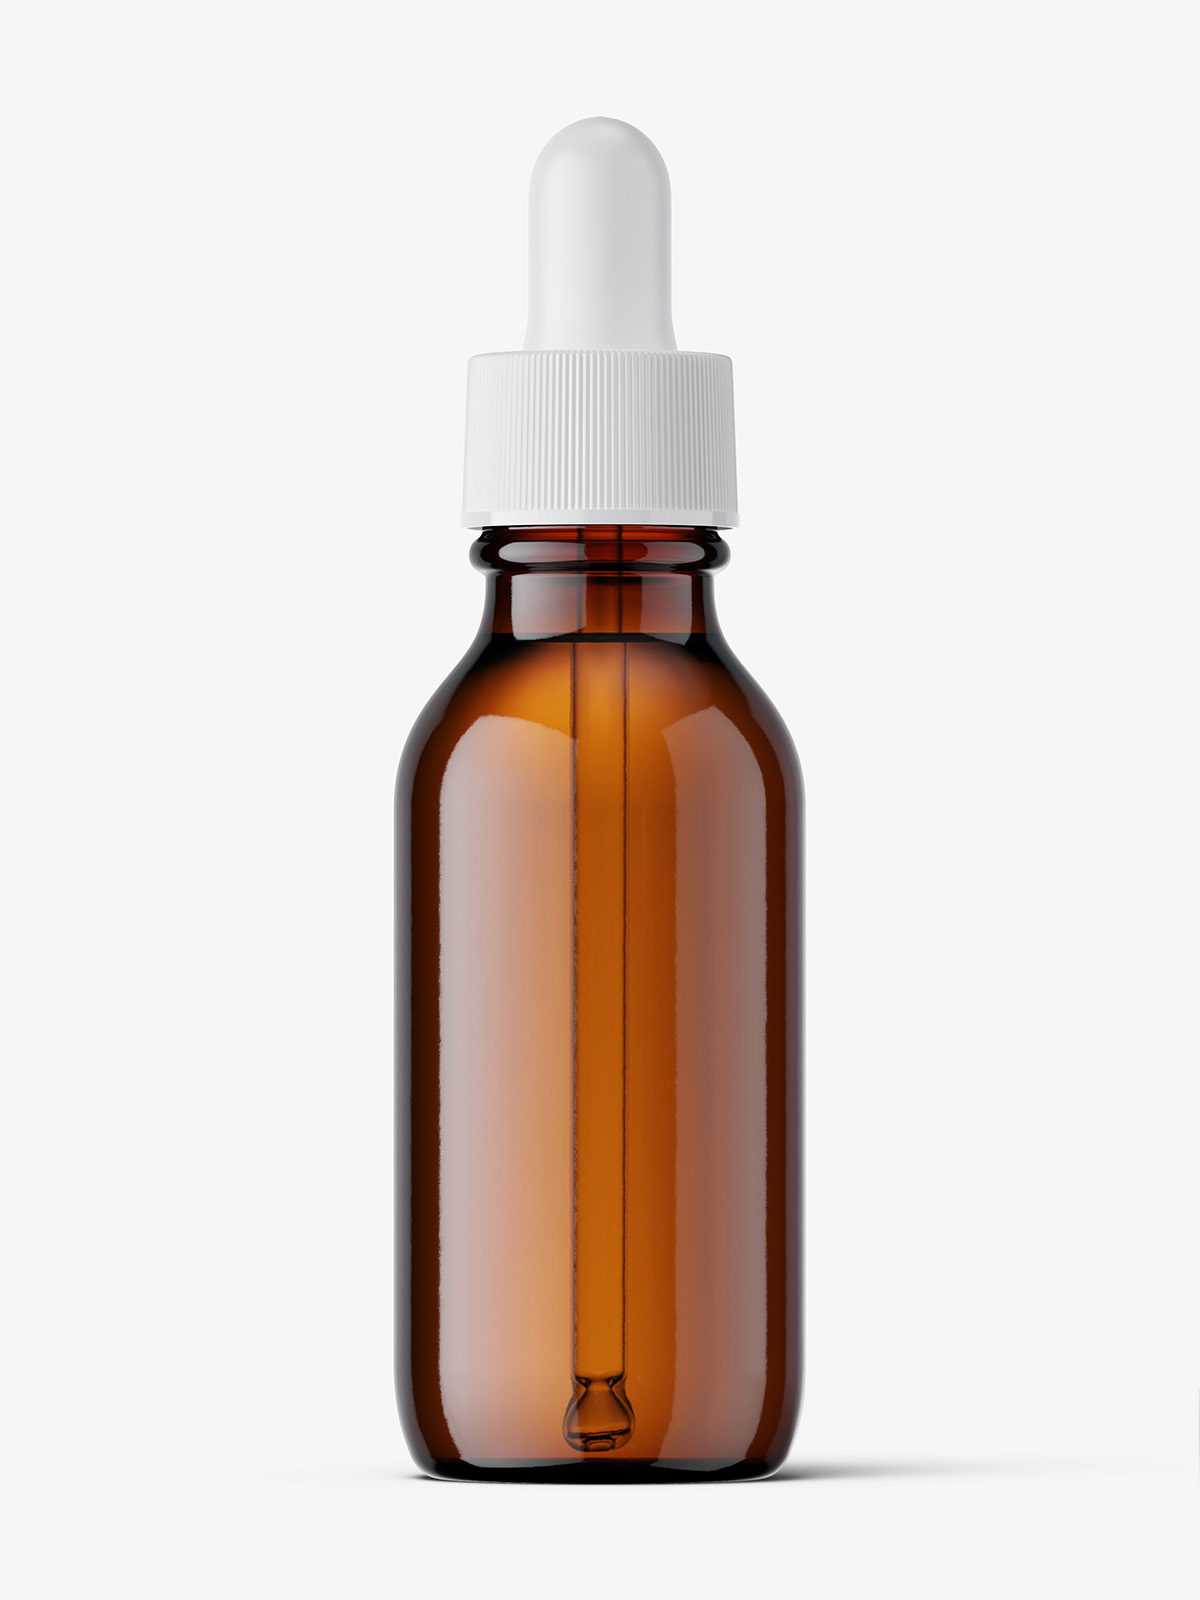 Download Amber winchester dropper bottle mockup / 30 ml - Smarty Mockups